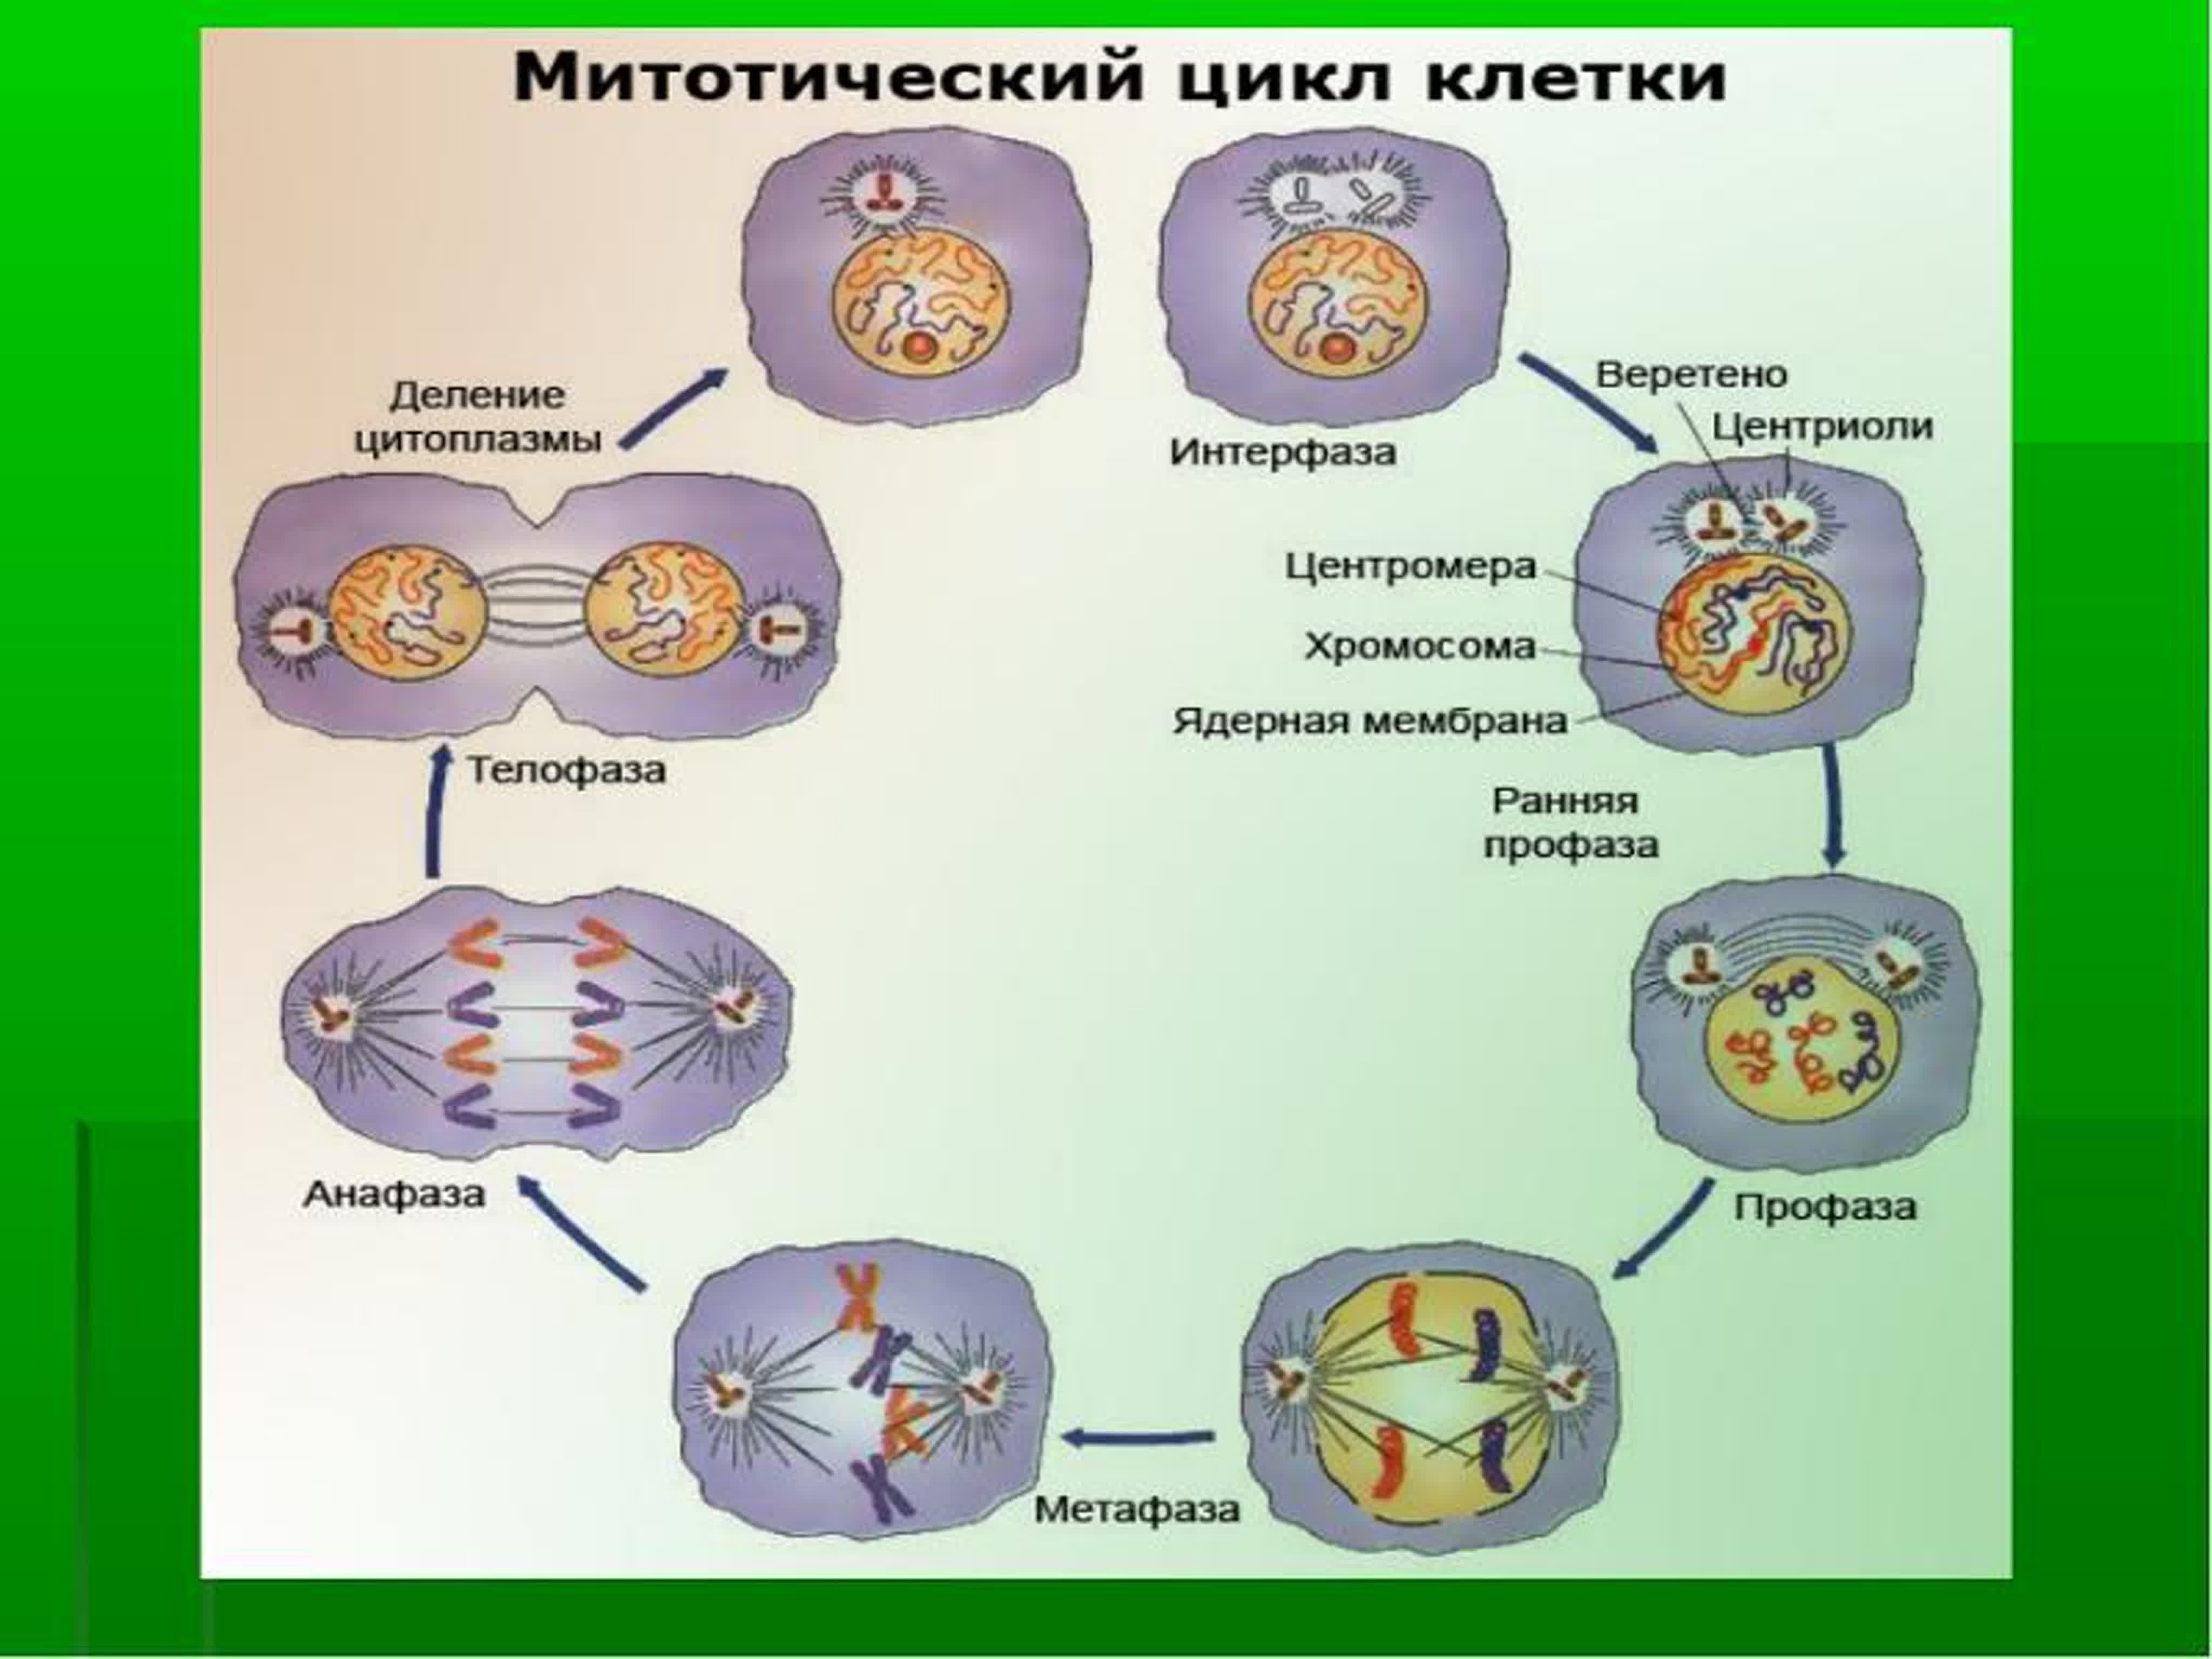 Зигота делится мейозом. Схема стадий жизненного цикла клетки. Клеточный митотический цикл клетки. Жизненный цикл методический циал клеткм. Схема клеточного и митотического циклов.